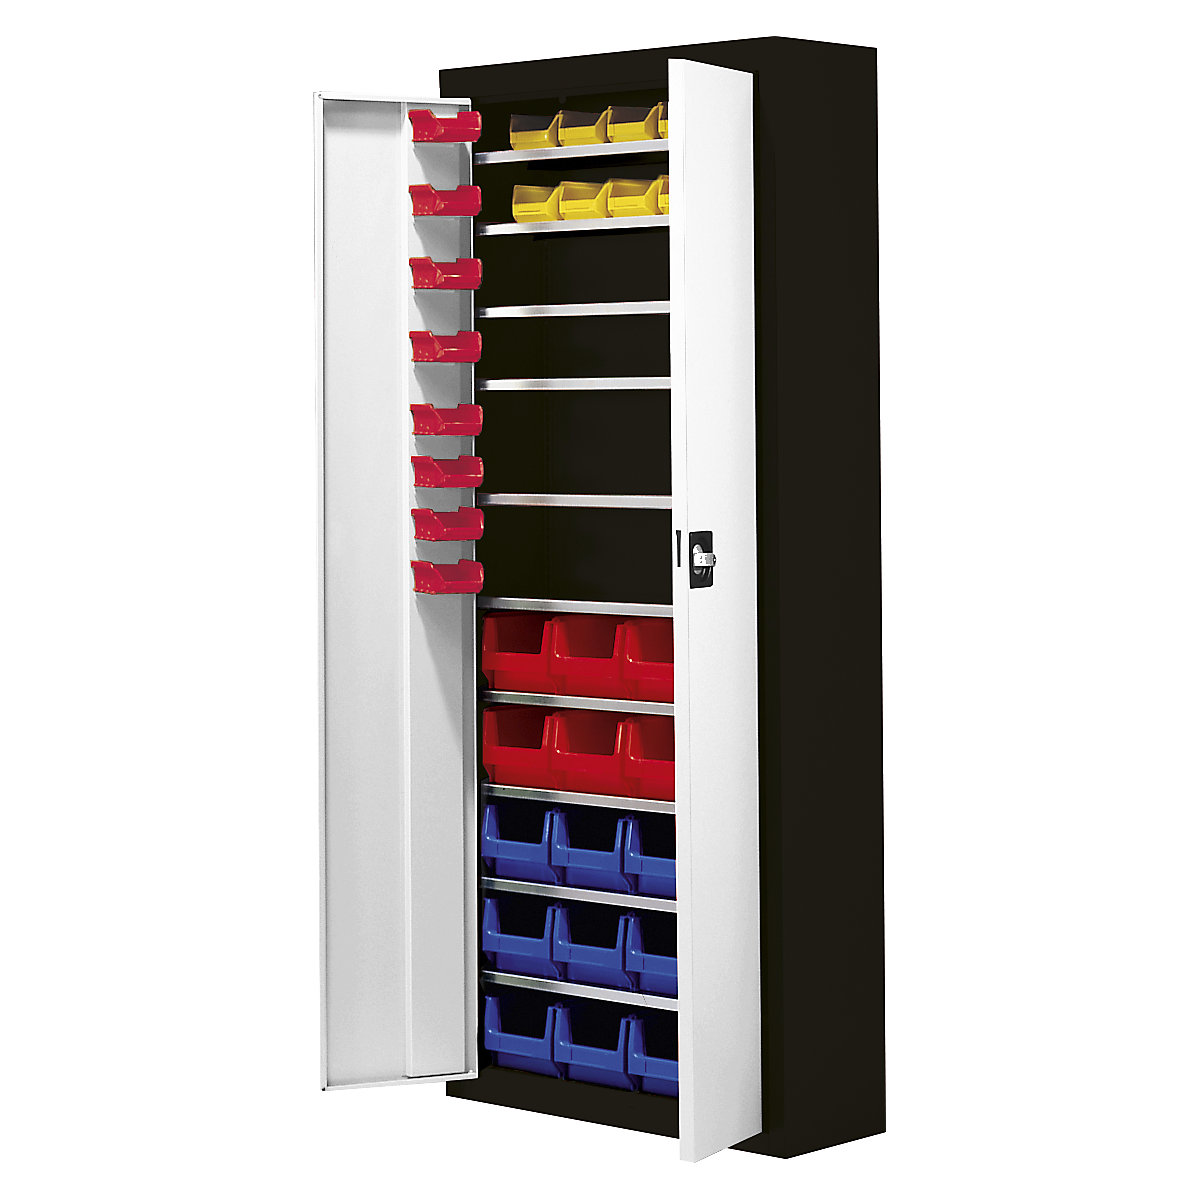 Armario-almacén con cajas visualizables – mauser, H x A x P 1740 x 680 x 280 mm, 48 cajas, bicolor, cuerpo negro, puertas en gris-2